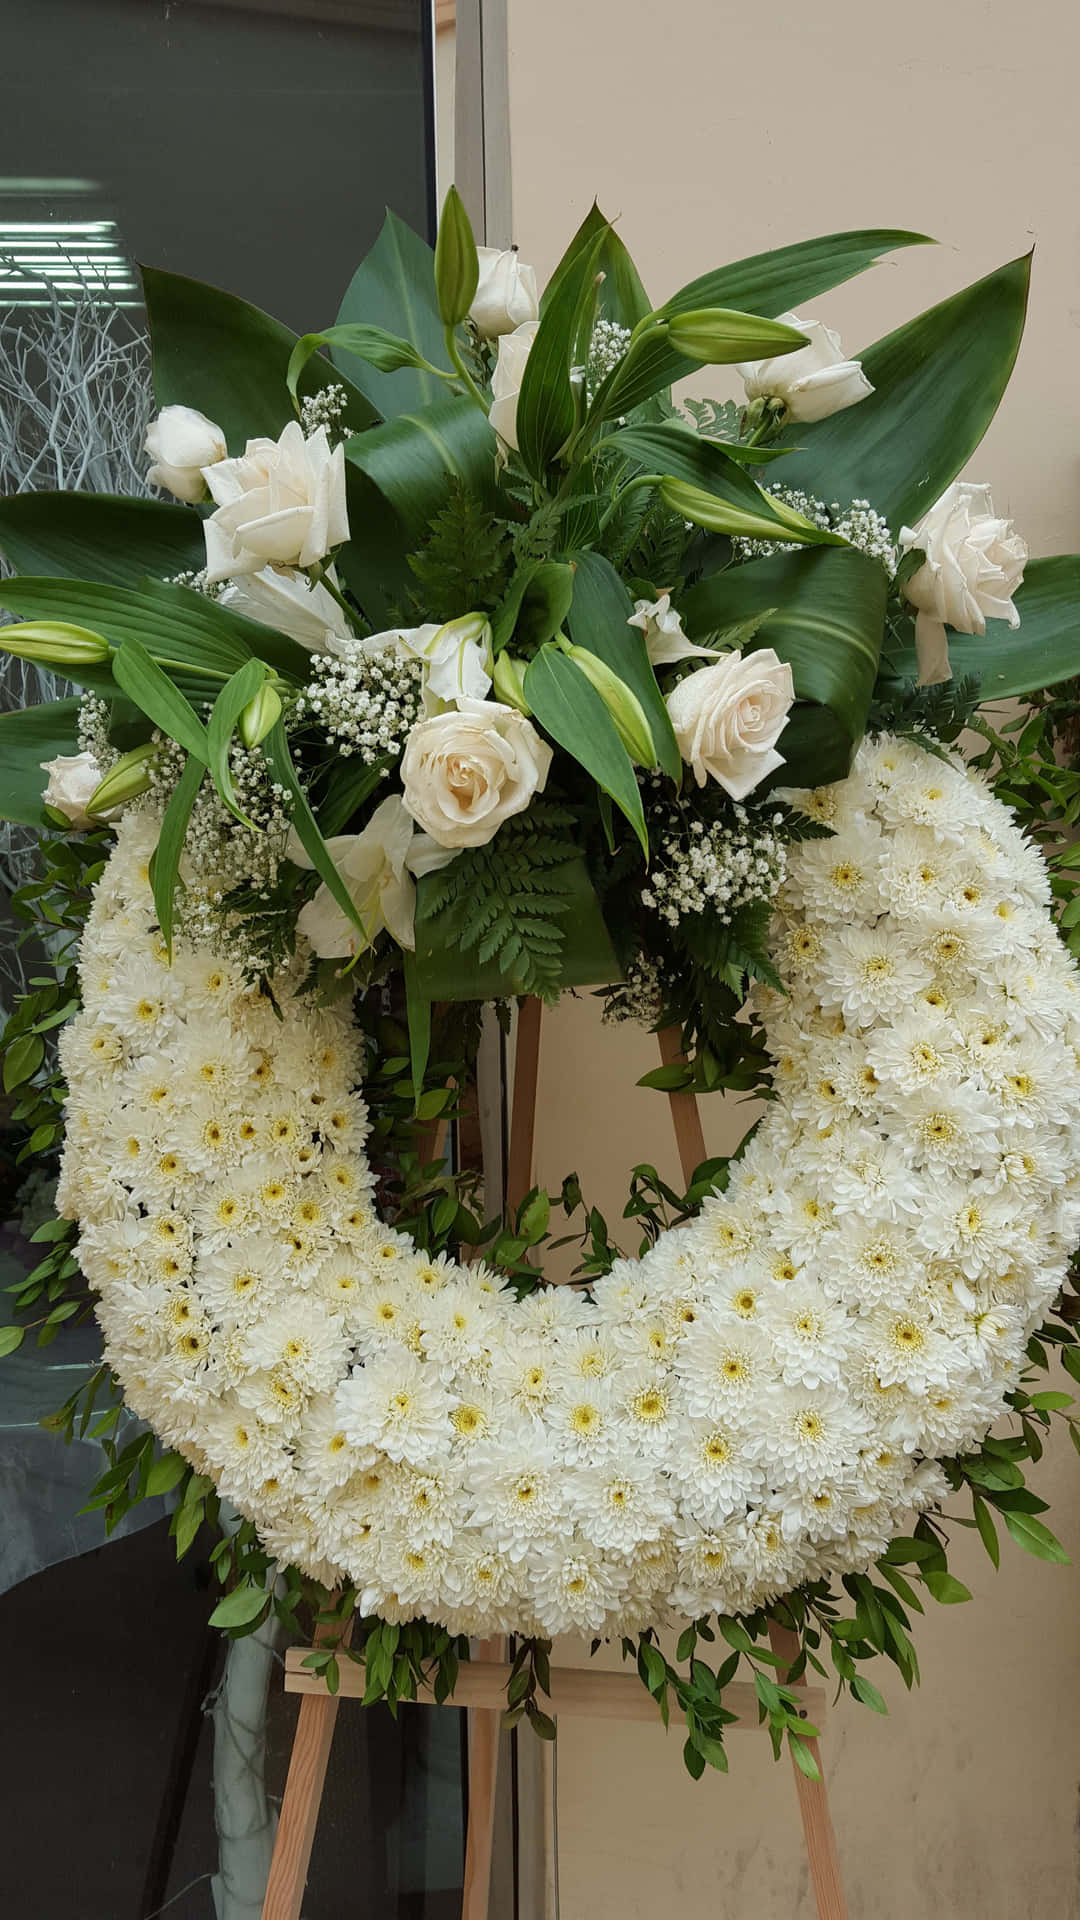 Unbellissimo Allestimento Floreale Per Un Funerale Per Commemorare La Persona Cara E Onorarne La Memoria.